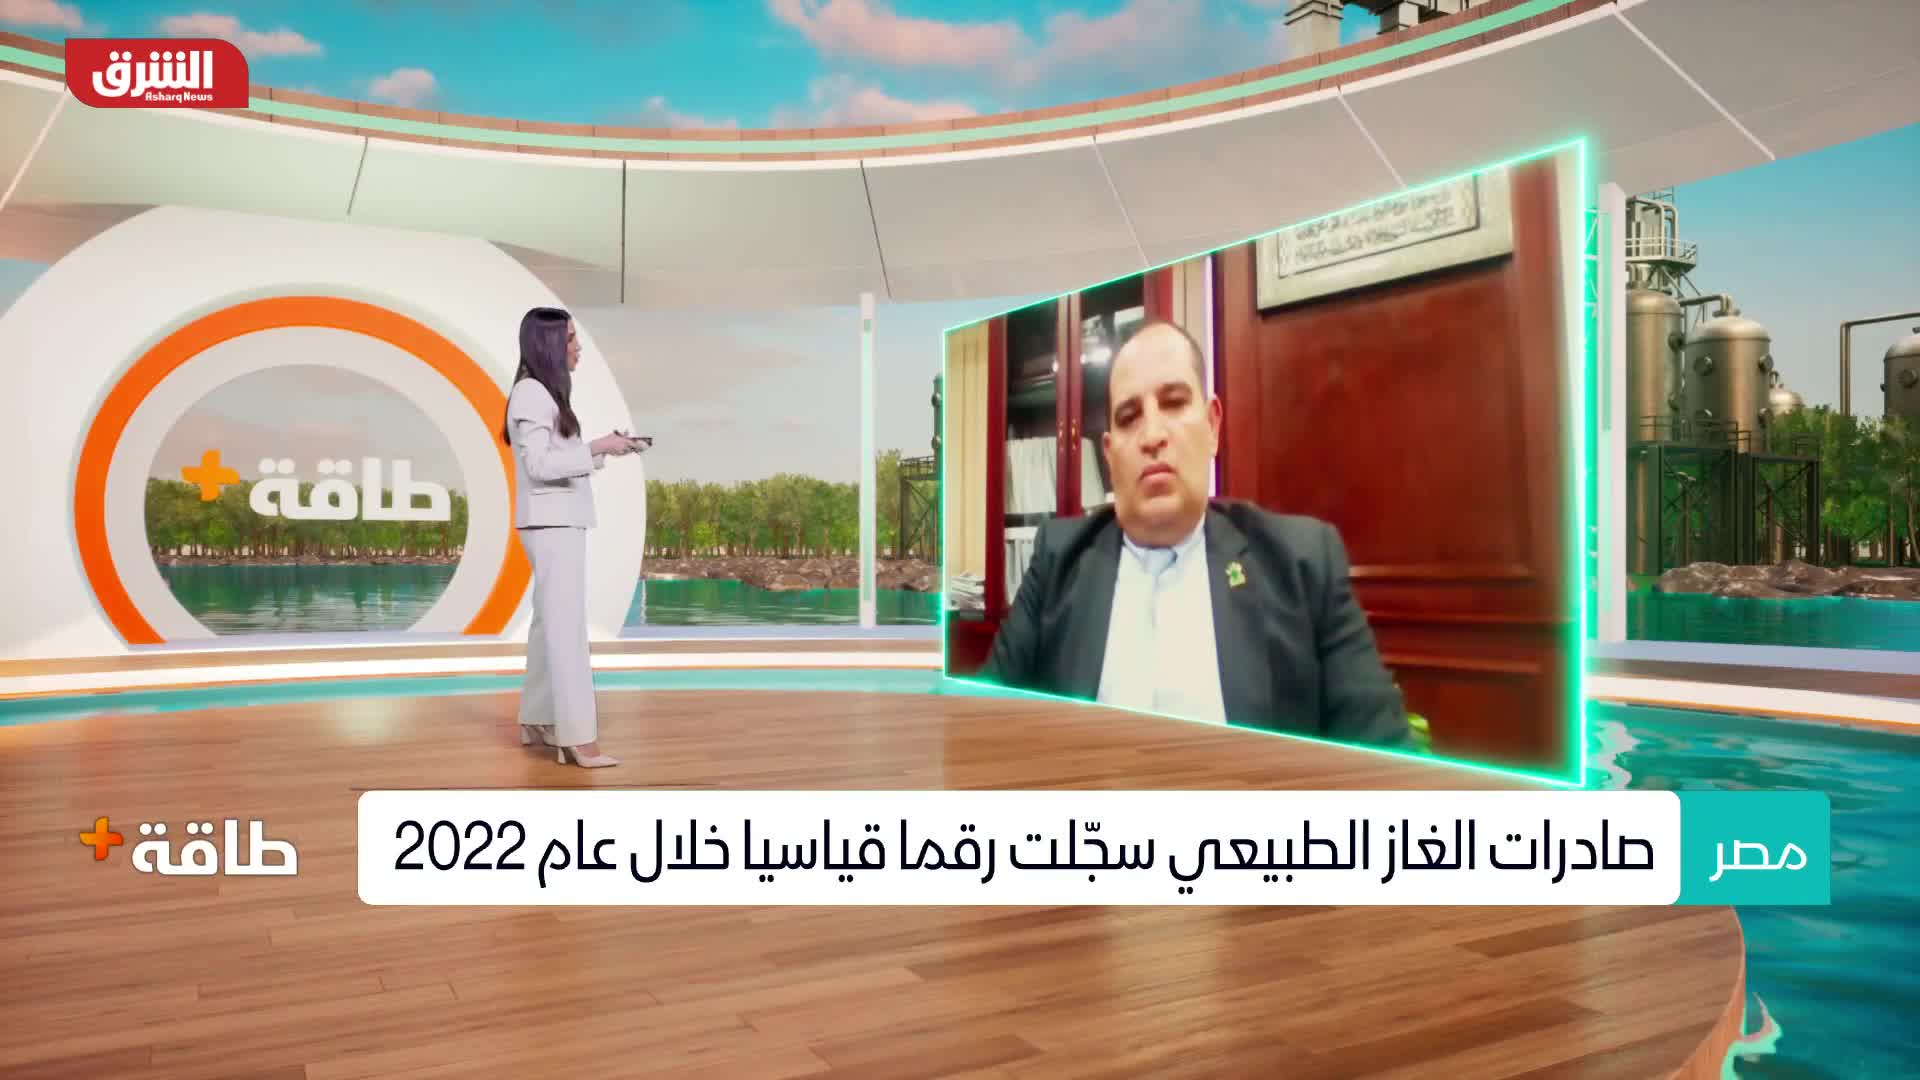 سمير رسلان: صادرات مصر من الغاز الطبيعي وصلت إلى 8 ملايين طن في 2022